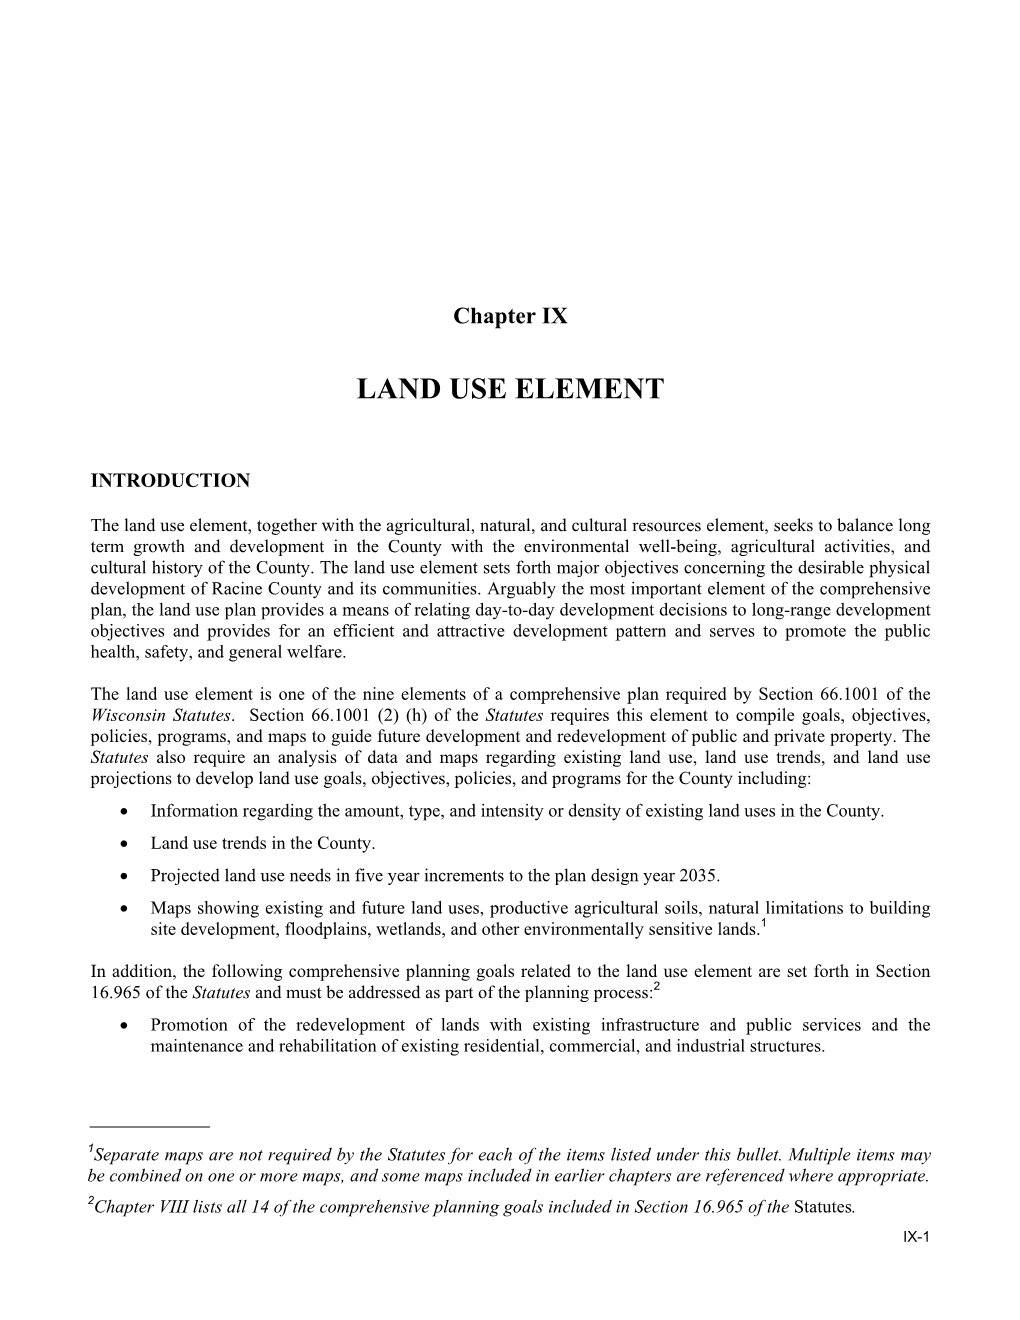 Land Use Element